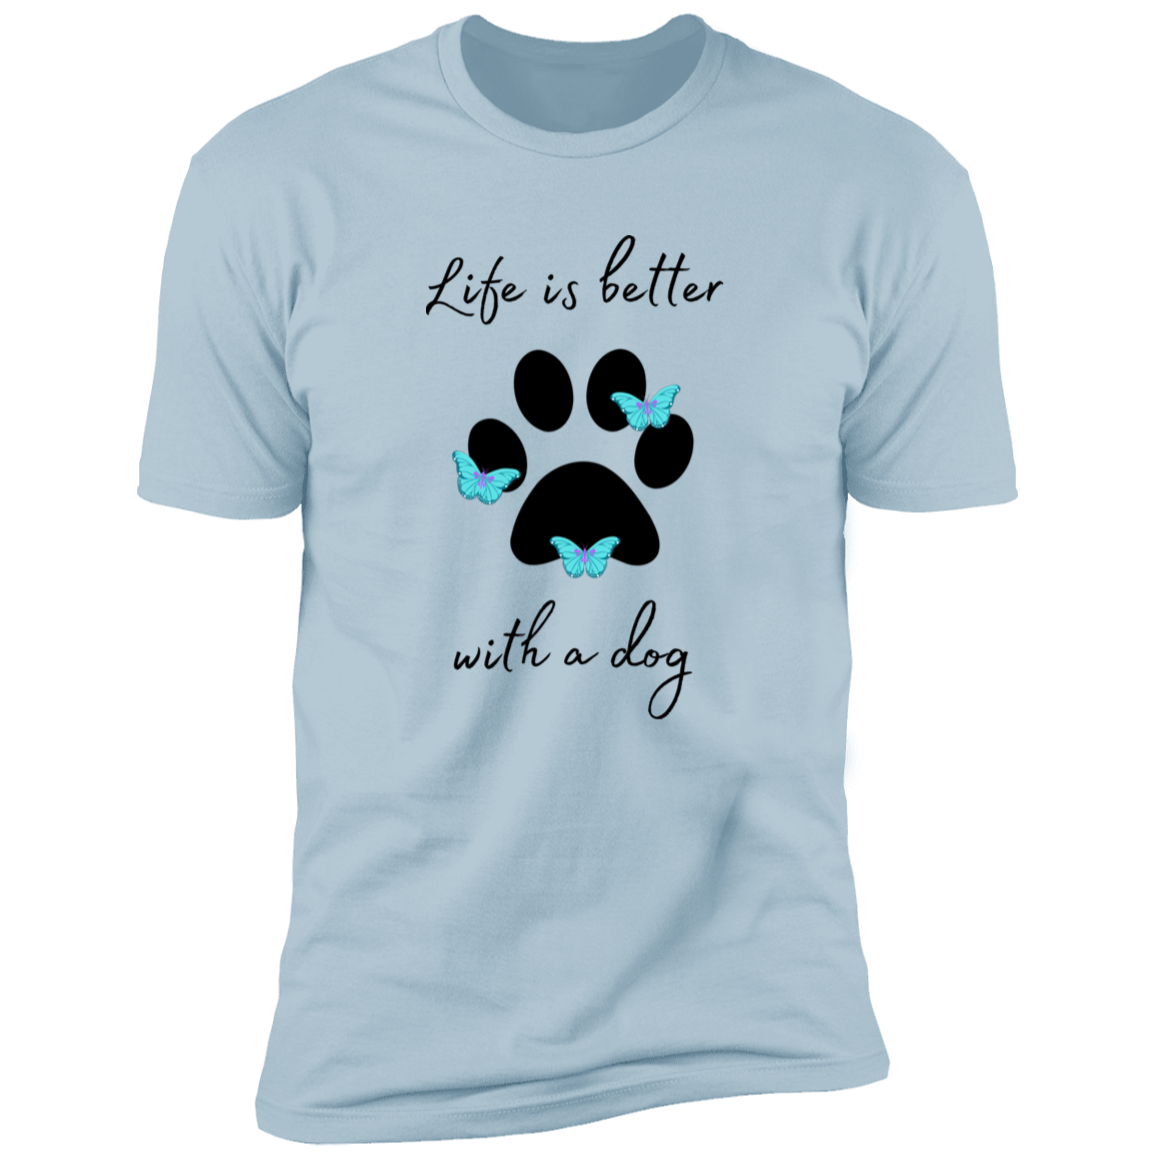 Kitt-Tea T-Shirt, kitty tea shirt, Cat Shirt for humans, funny cat shirt, in light blue